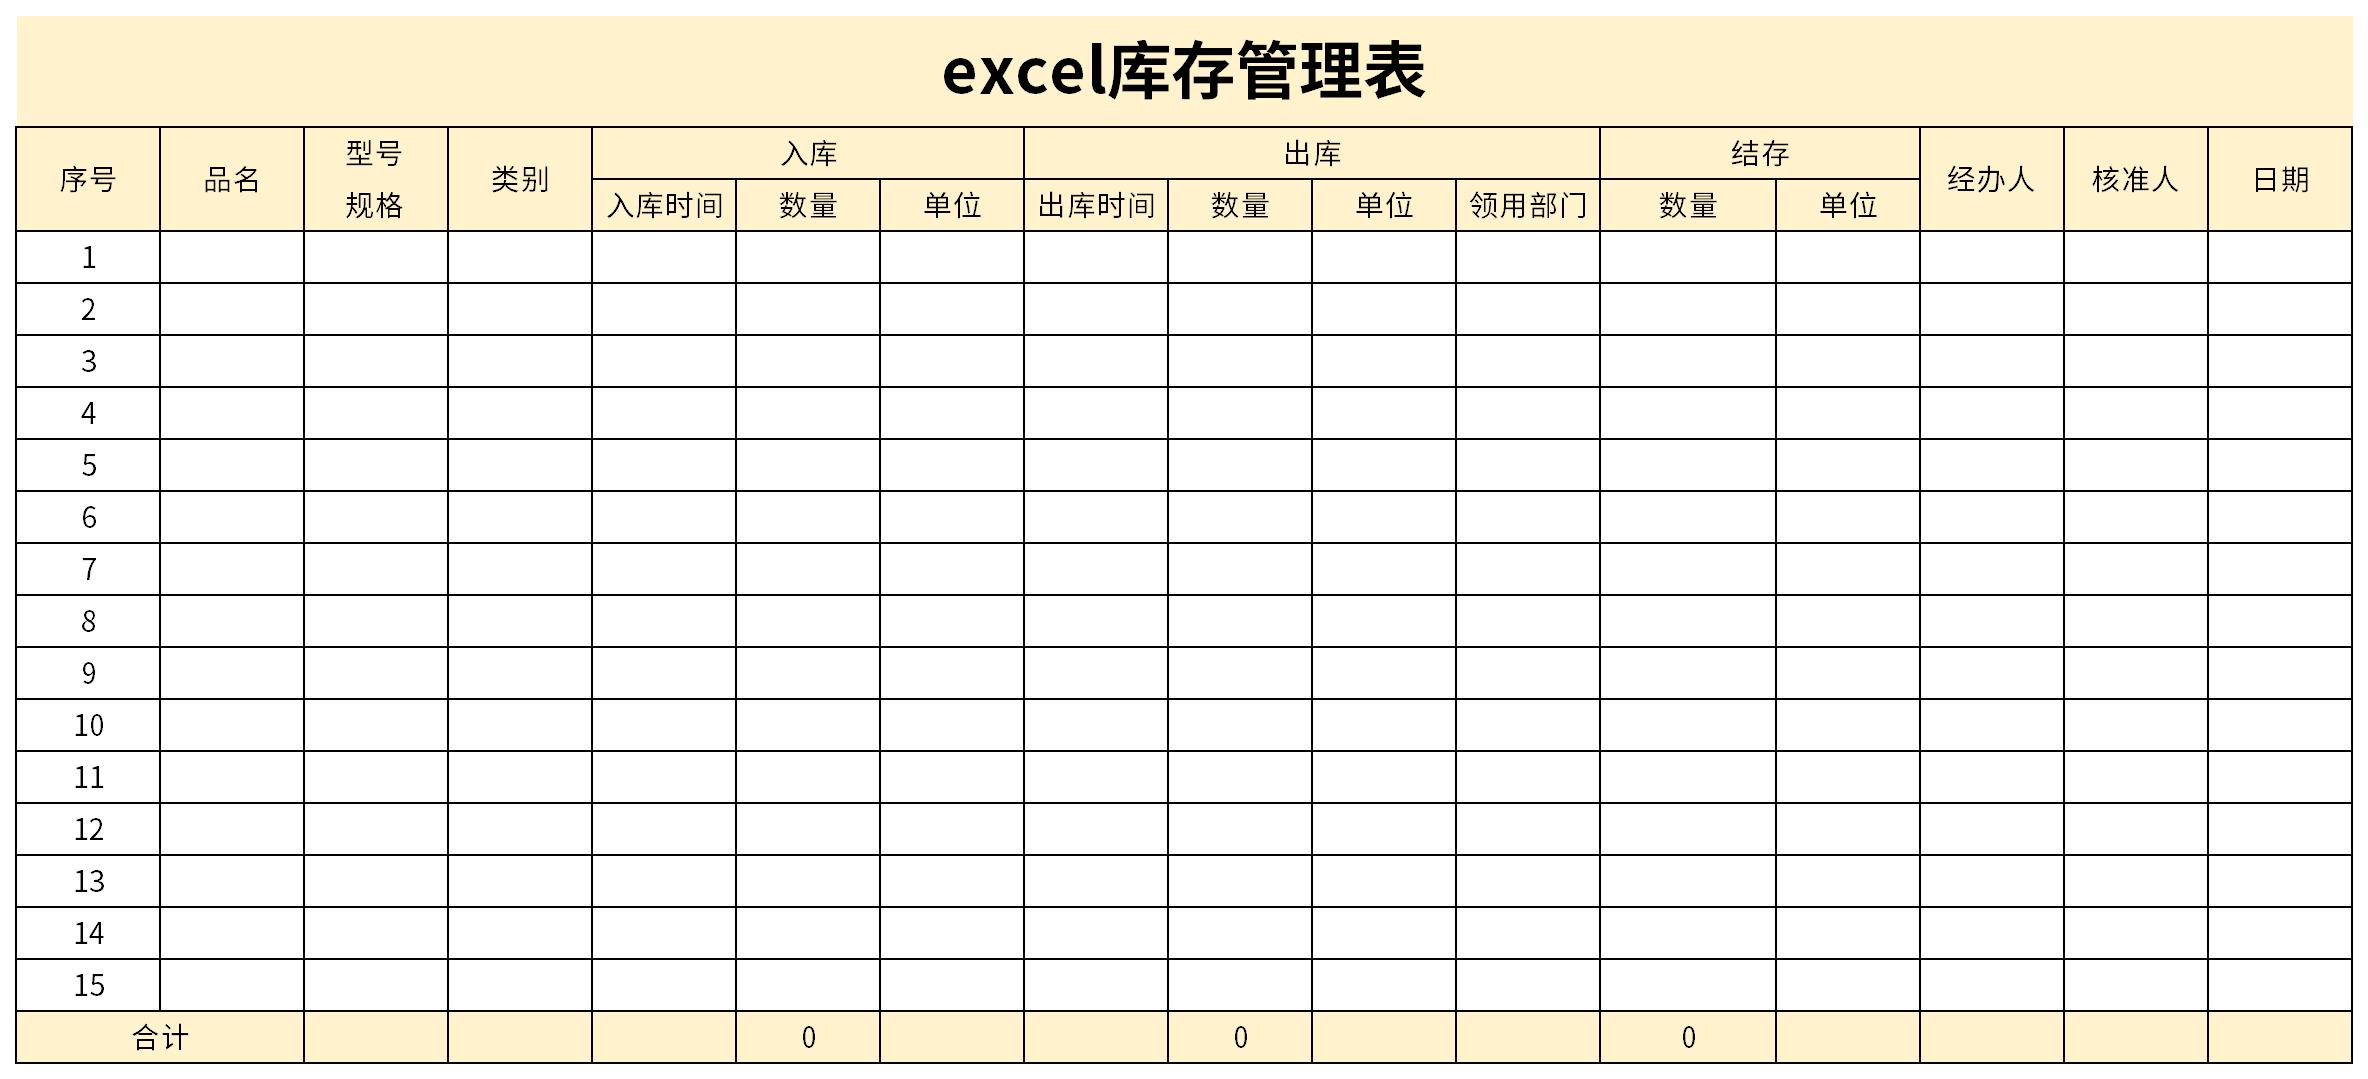 excel库存管理表是仓库管理人员对储存的货物进行统计的表格